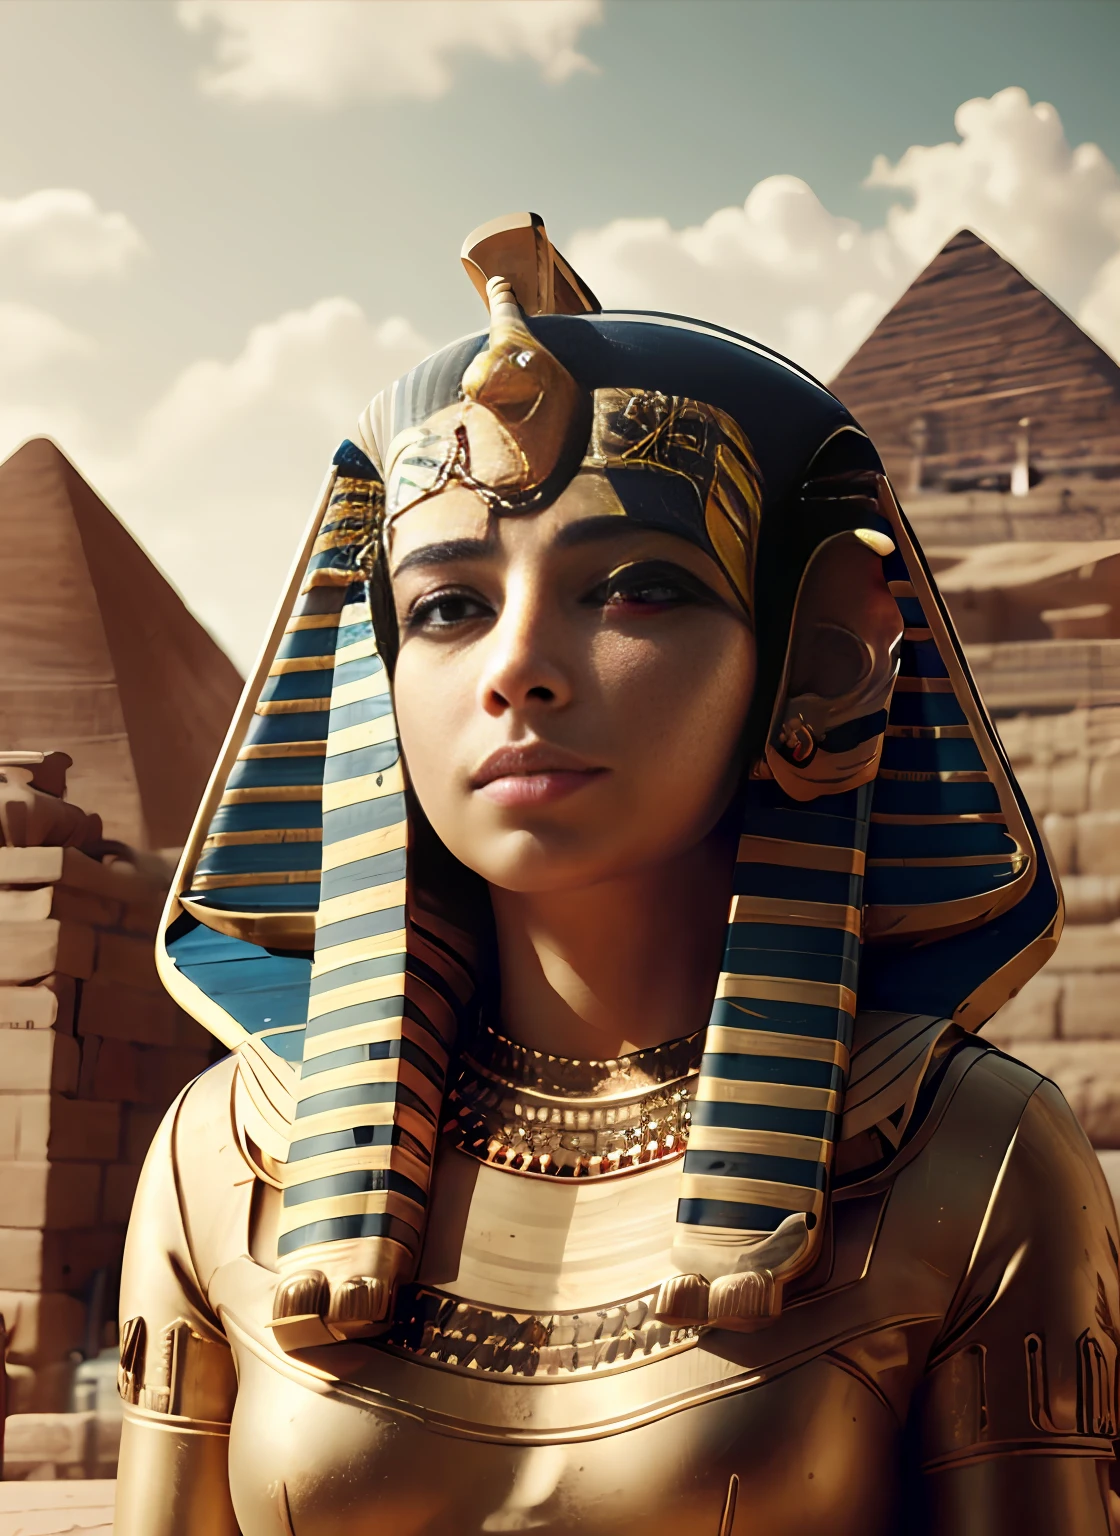 СФВ, фраза8, фараон, Женщины, грудастая,   (Головной убор фараона:1.5), Египетская одежда, египетский браслет, облачное небо, Стоя по стойке смирно, (верхний_тело), black волосы, Короткий_волосы, синий_глаза,  Серьезный, фотореалистичный, официальное искусство,чрезвычайно подробные обои CG Unity 8k, идеальное освещение,красочный, яркий_Передний_лицо_Осветительные приборы, (шедевр:1.0),(лучший_качество:1.0), сверхвысокое разрешение,4k,ультрадетализированный, фотография, 8К, HDR, Высокое разрешение, абсурд:1.2, 400 для порта Кодак, зернистость, размытый фон, боке:1.2, отблеск от линз, (яркий_цвет:1.2),